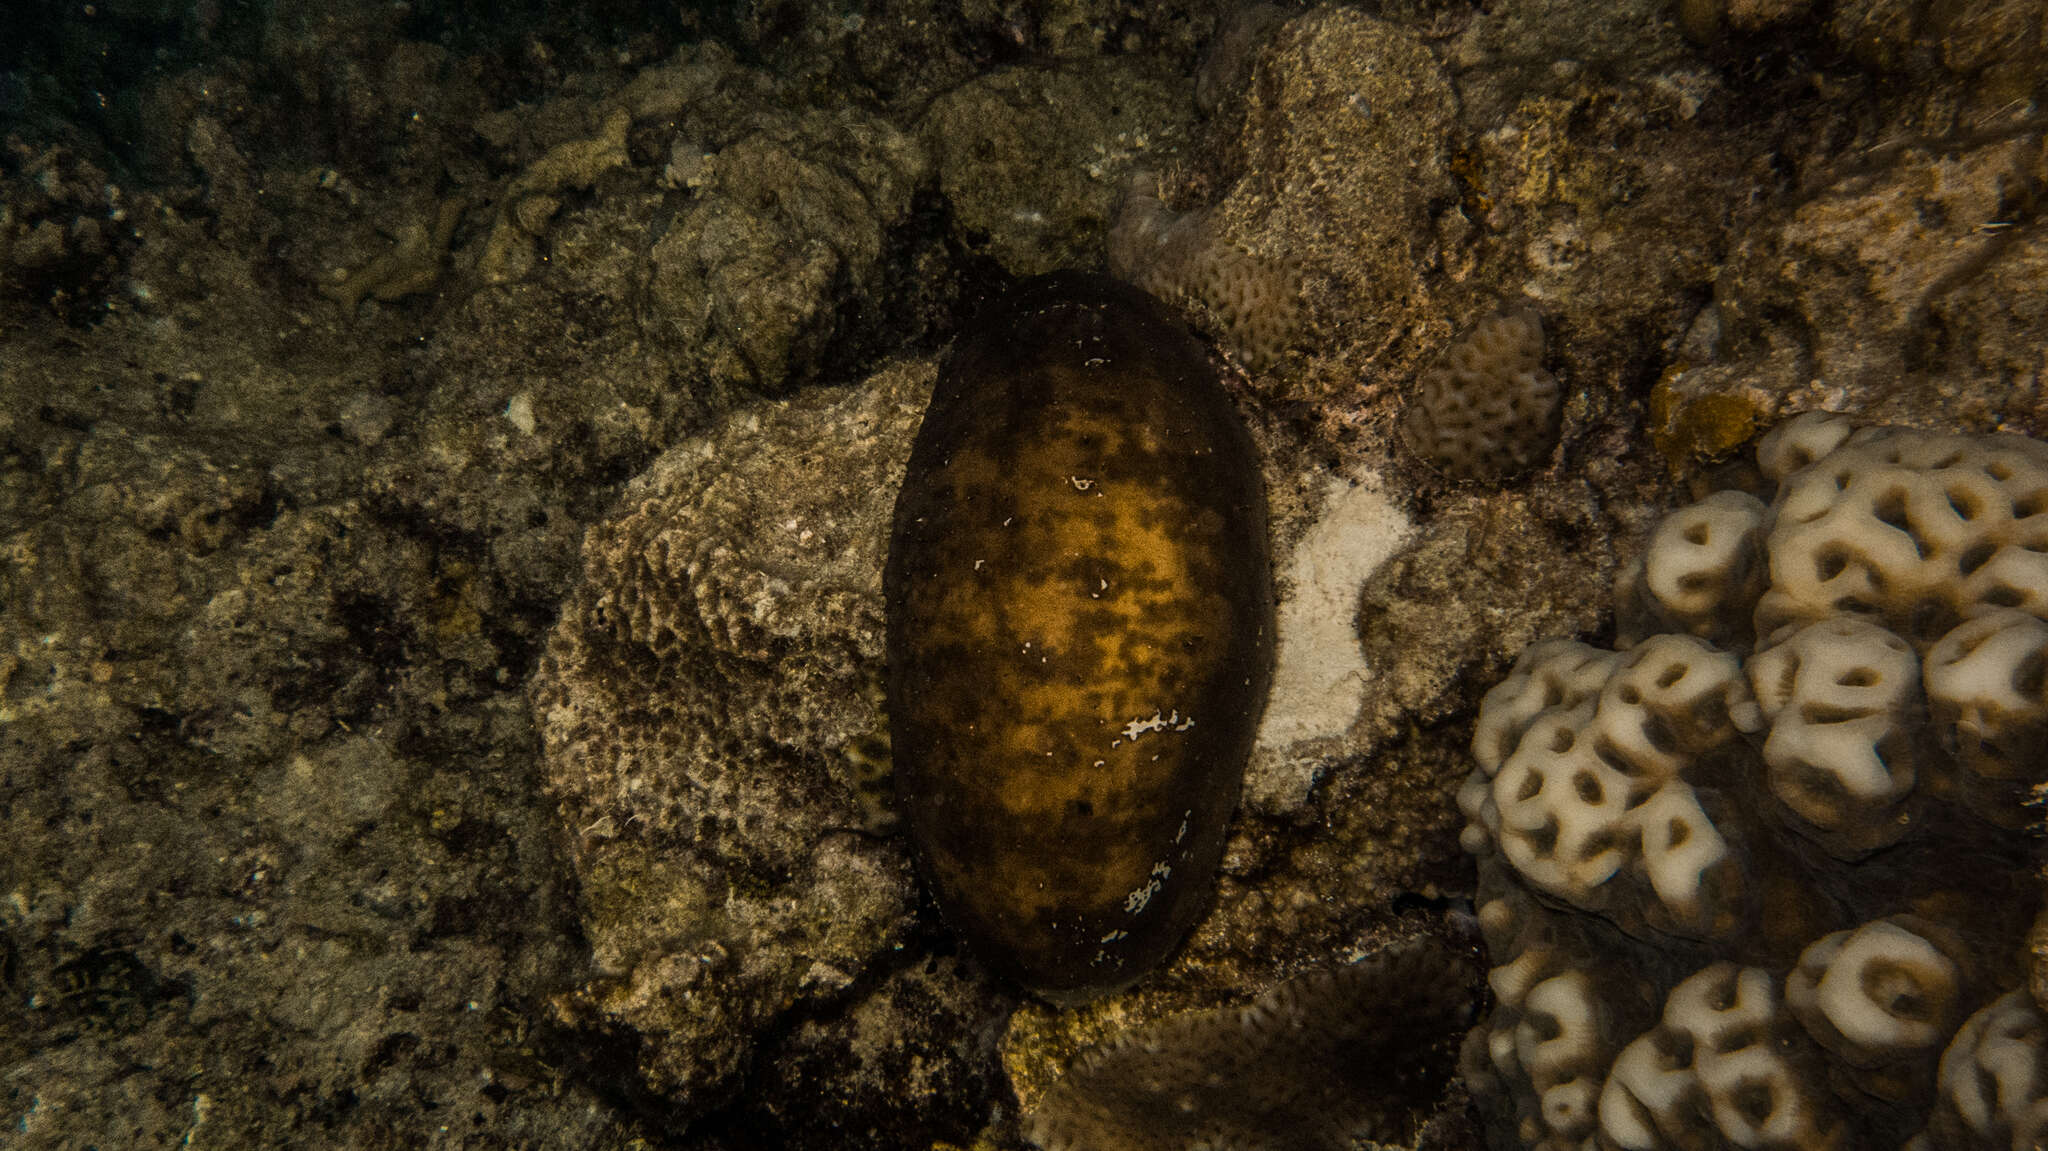 Image of Stonefish